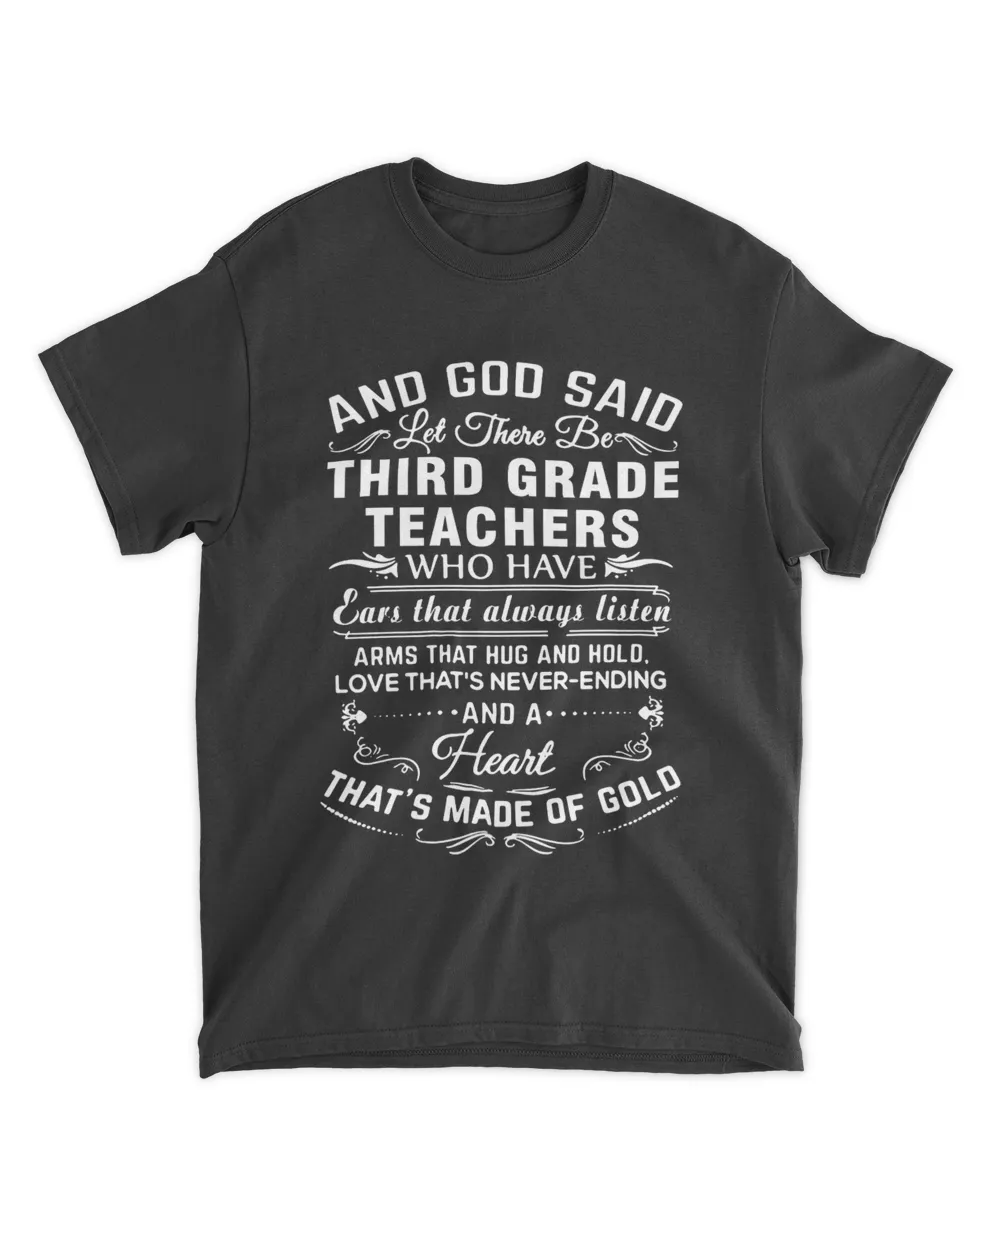 THIRD GRADE TEACHER